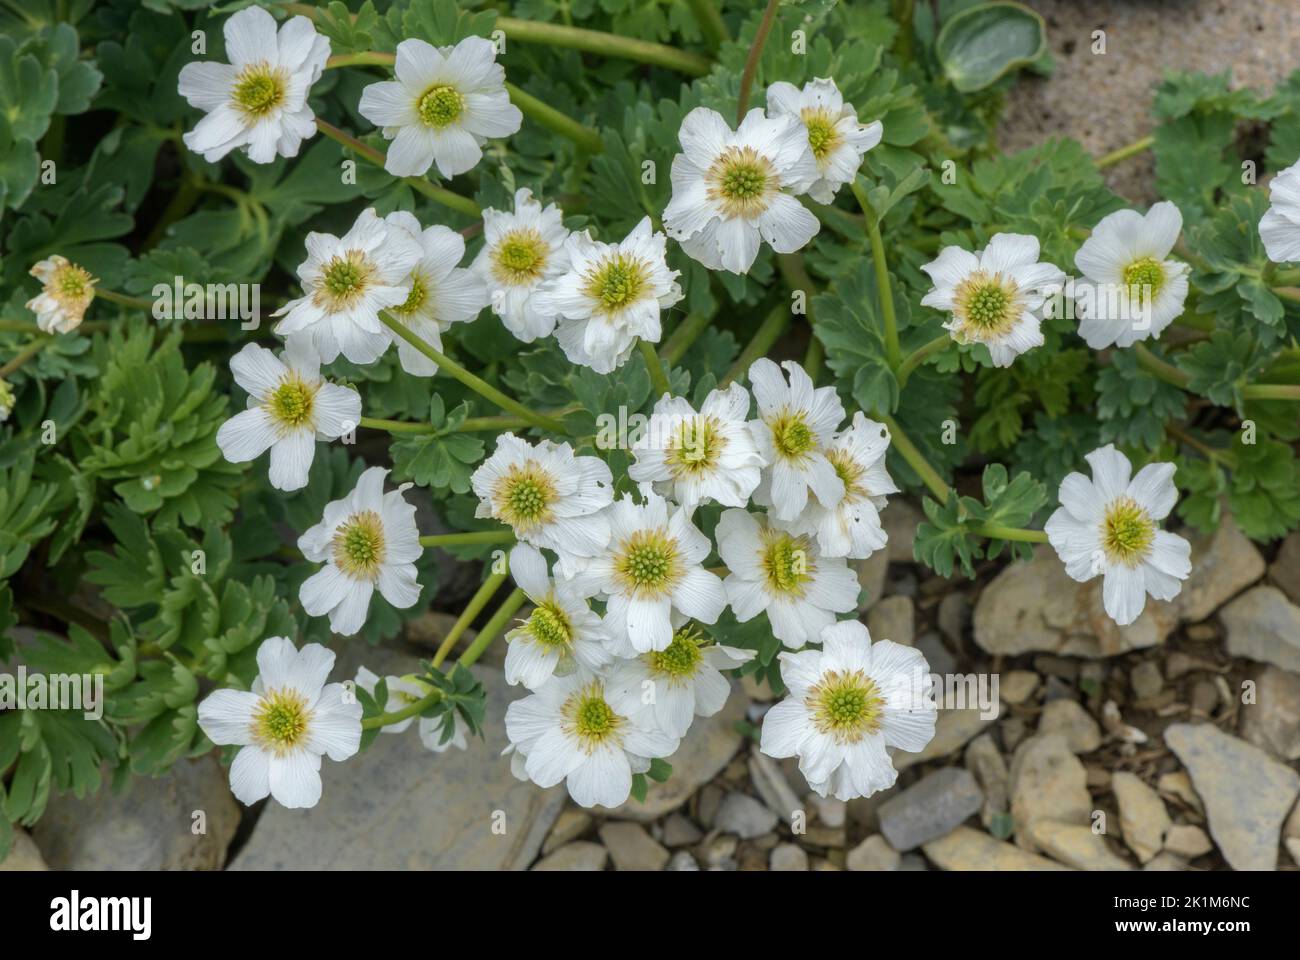 Coriander-leaved Callianthemum, Callianthemum coriandrifolium in flower in the Swiss Alps. Stock Photo